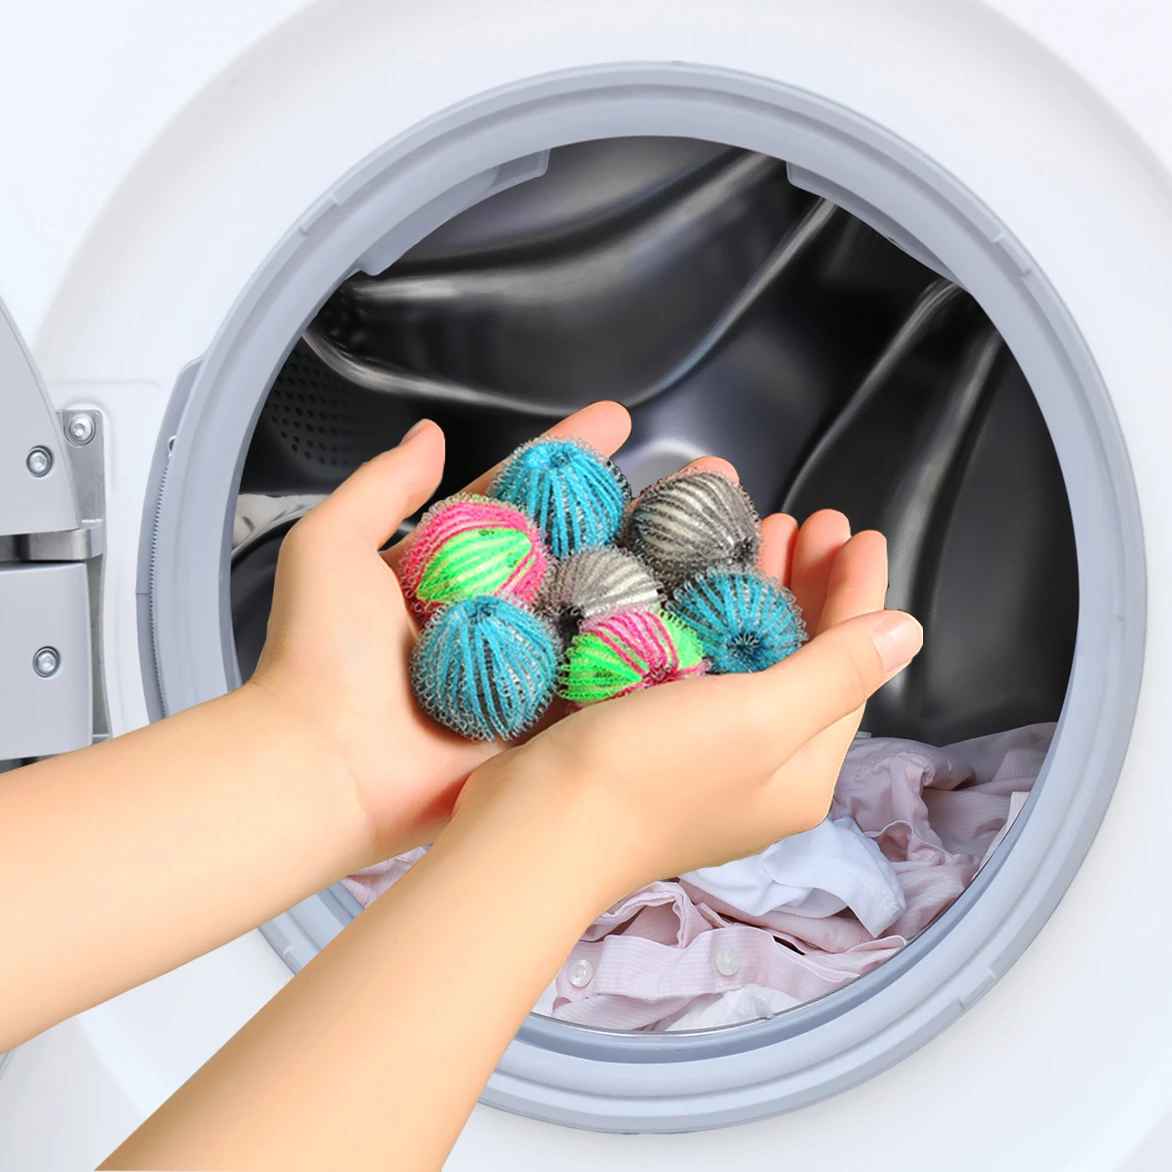 Come catturare i peli nella lavatrice - Avo - By Margherita Ventura